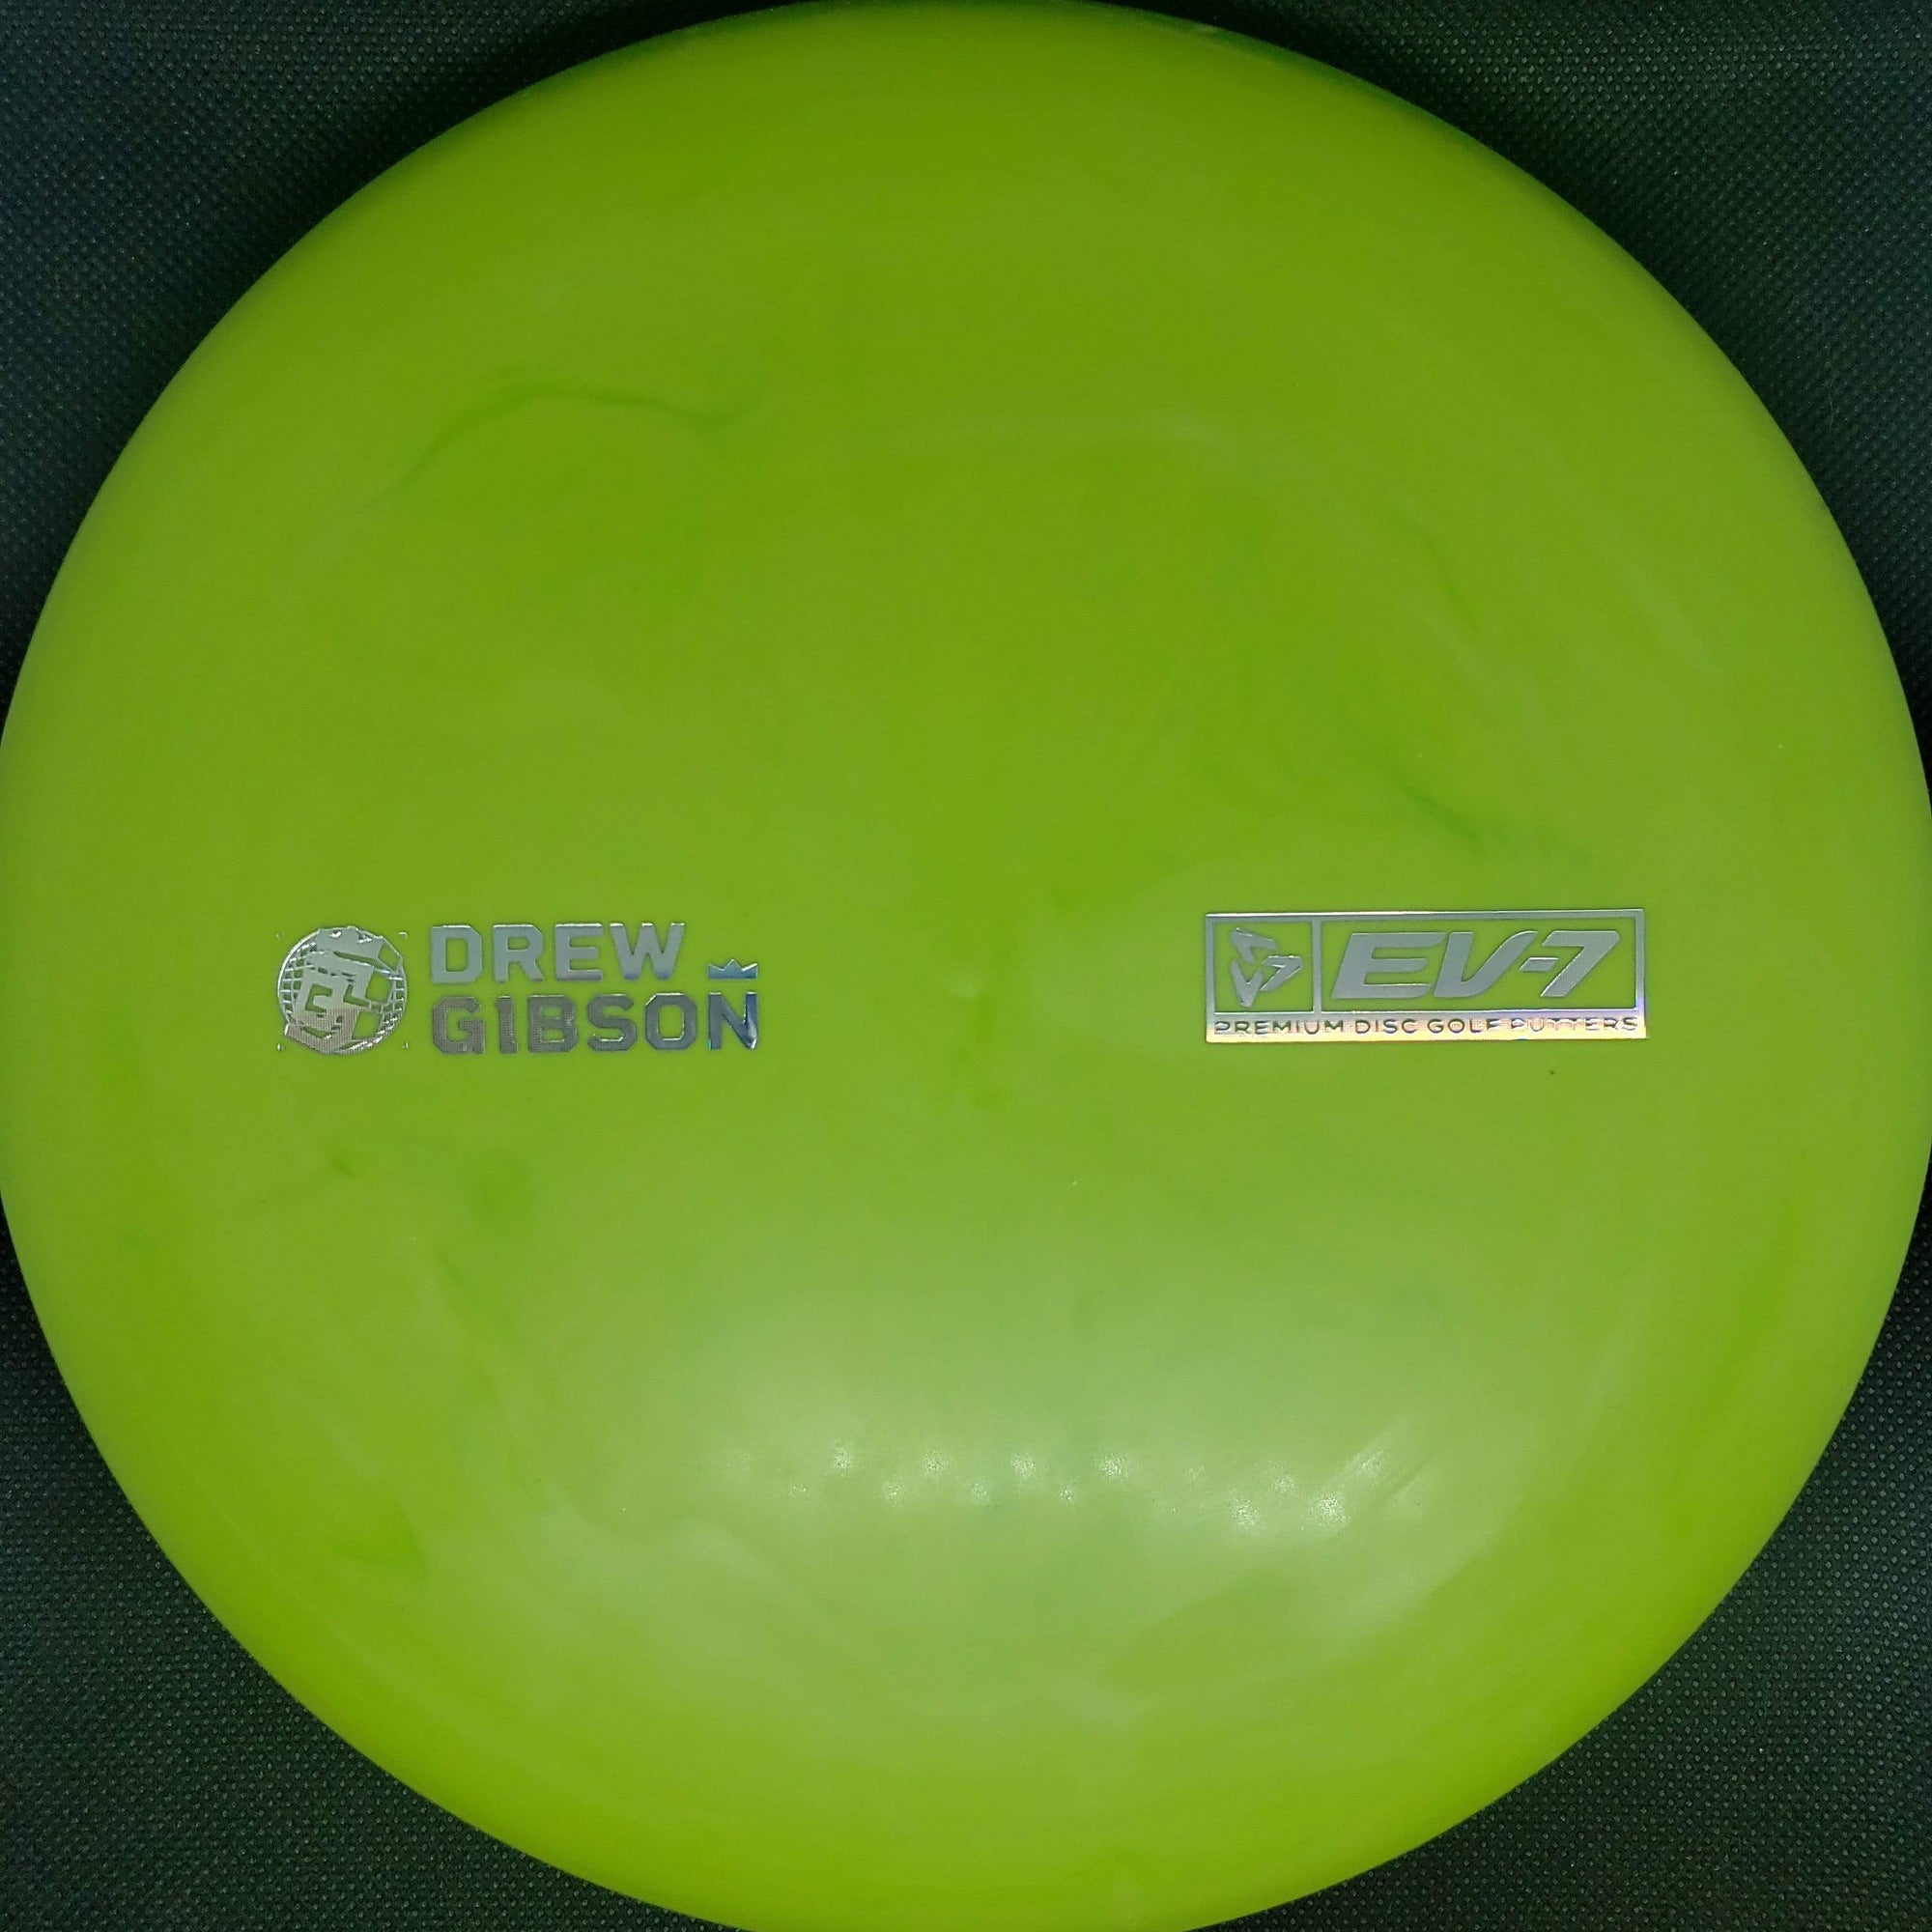 Ev7 Putter Green 172g Drew Gibson Penrose - OG Soft